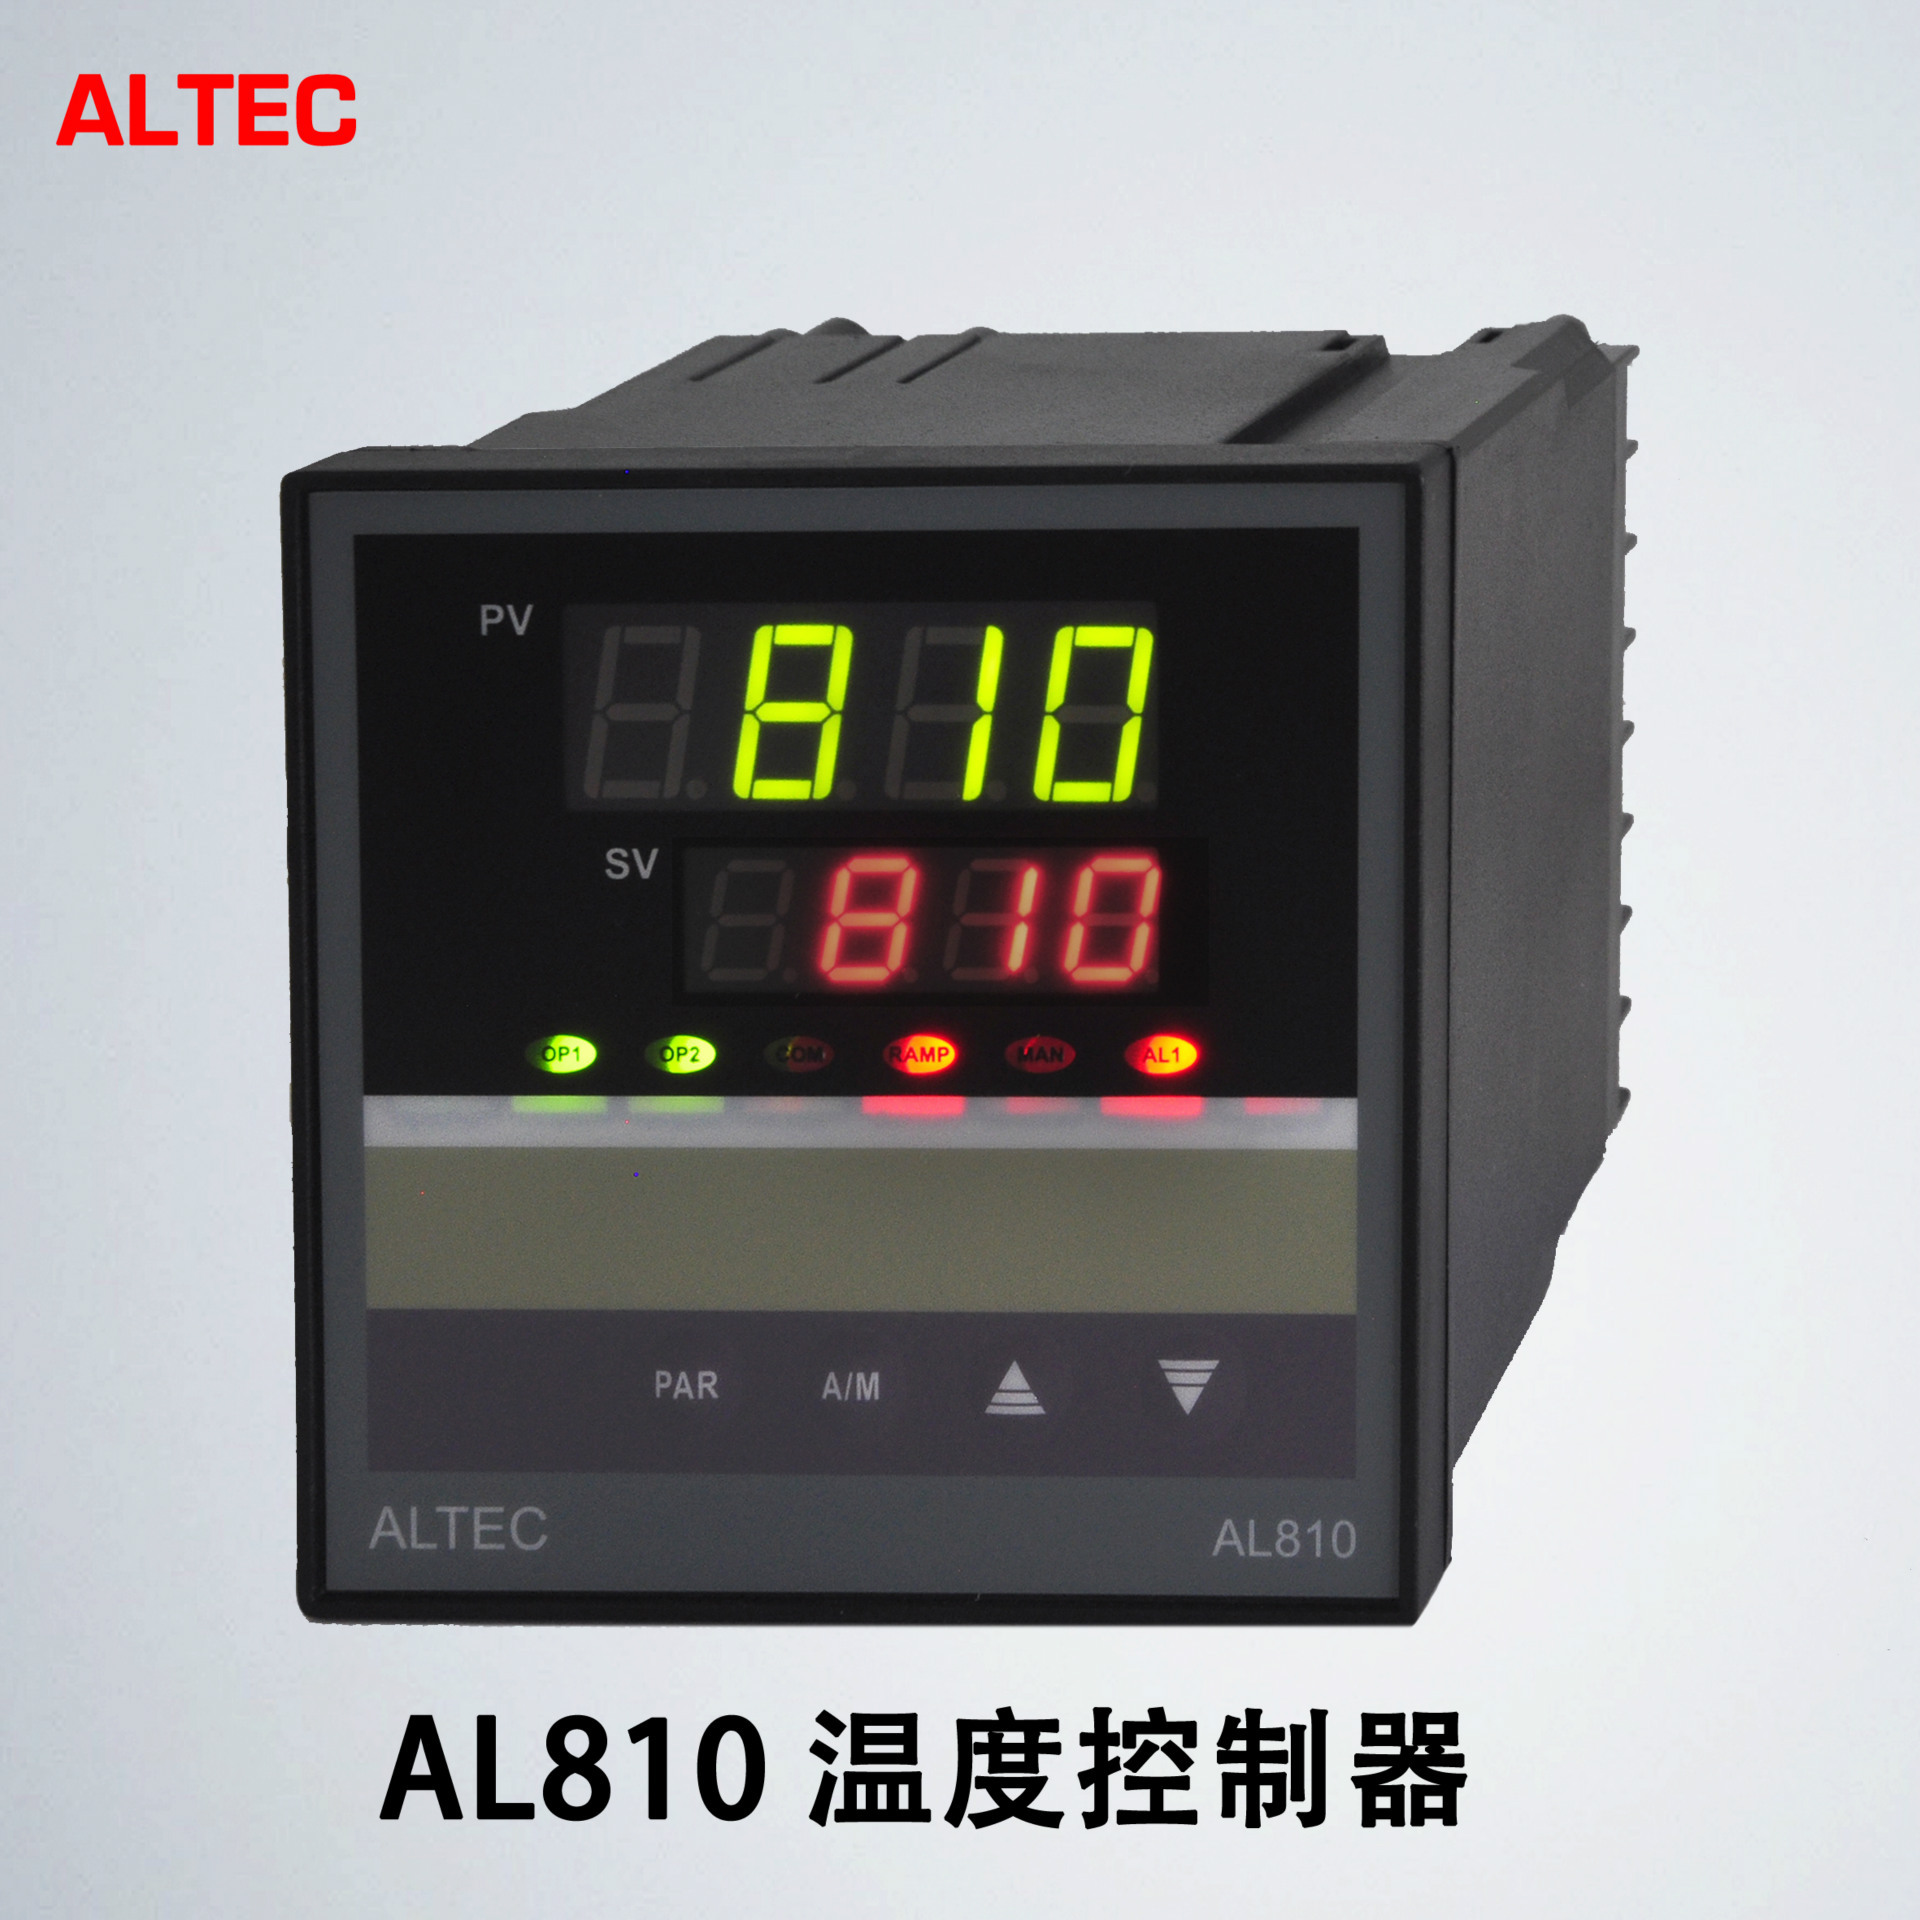 al810系列温度控制器/调节器-altec深圳亚特克